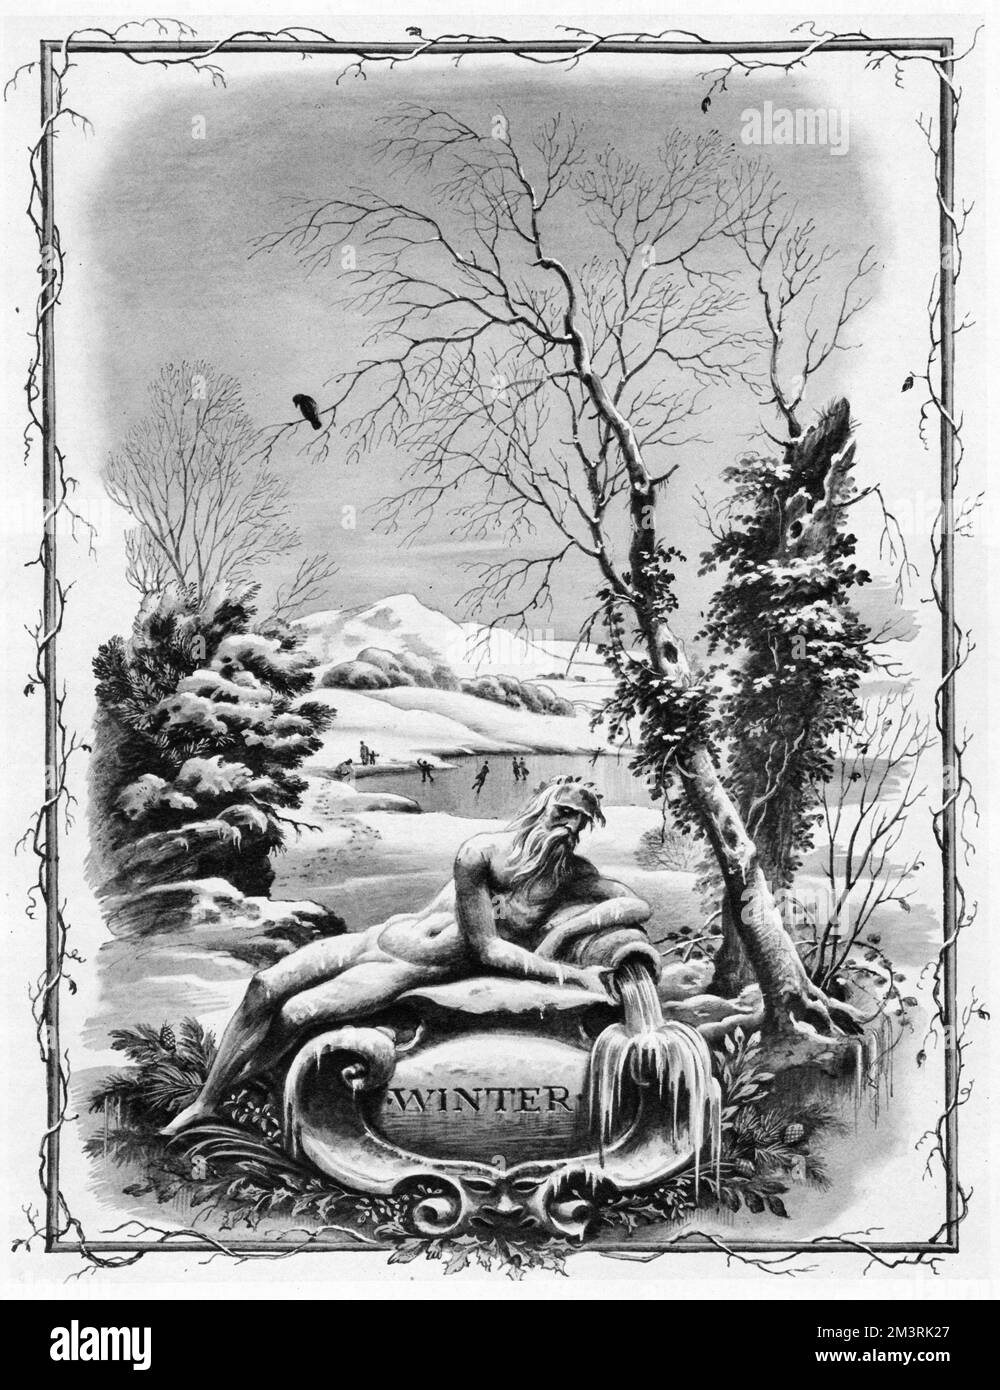 Ein Eindruck vom Winter von Rex Whistler, der eine Statue der alten Vaterzeit im Vordergrund zeigt, während Skater die Freuden eines gefrorenen Teiches genießen. Datum: 1935 Stockfoto